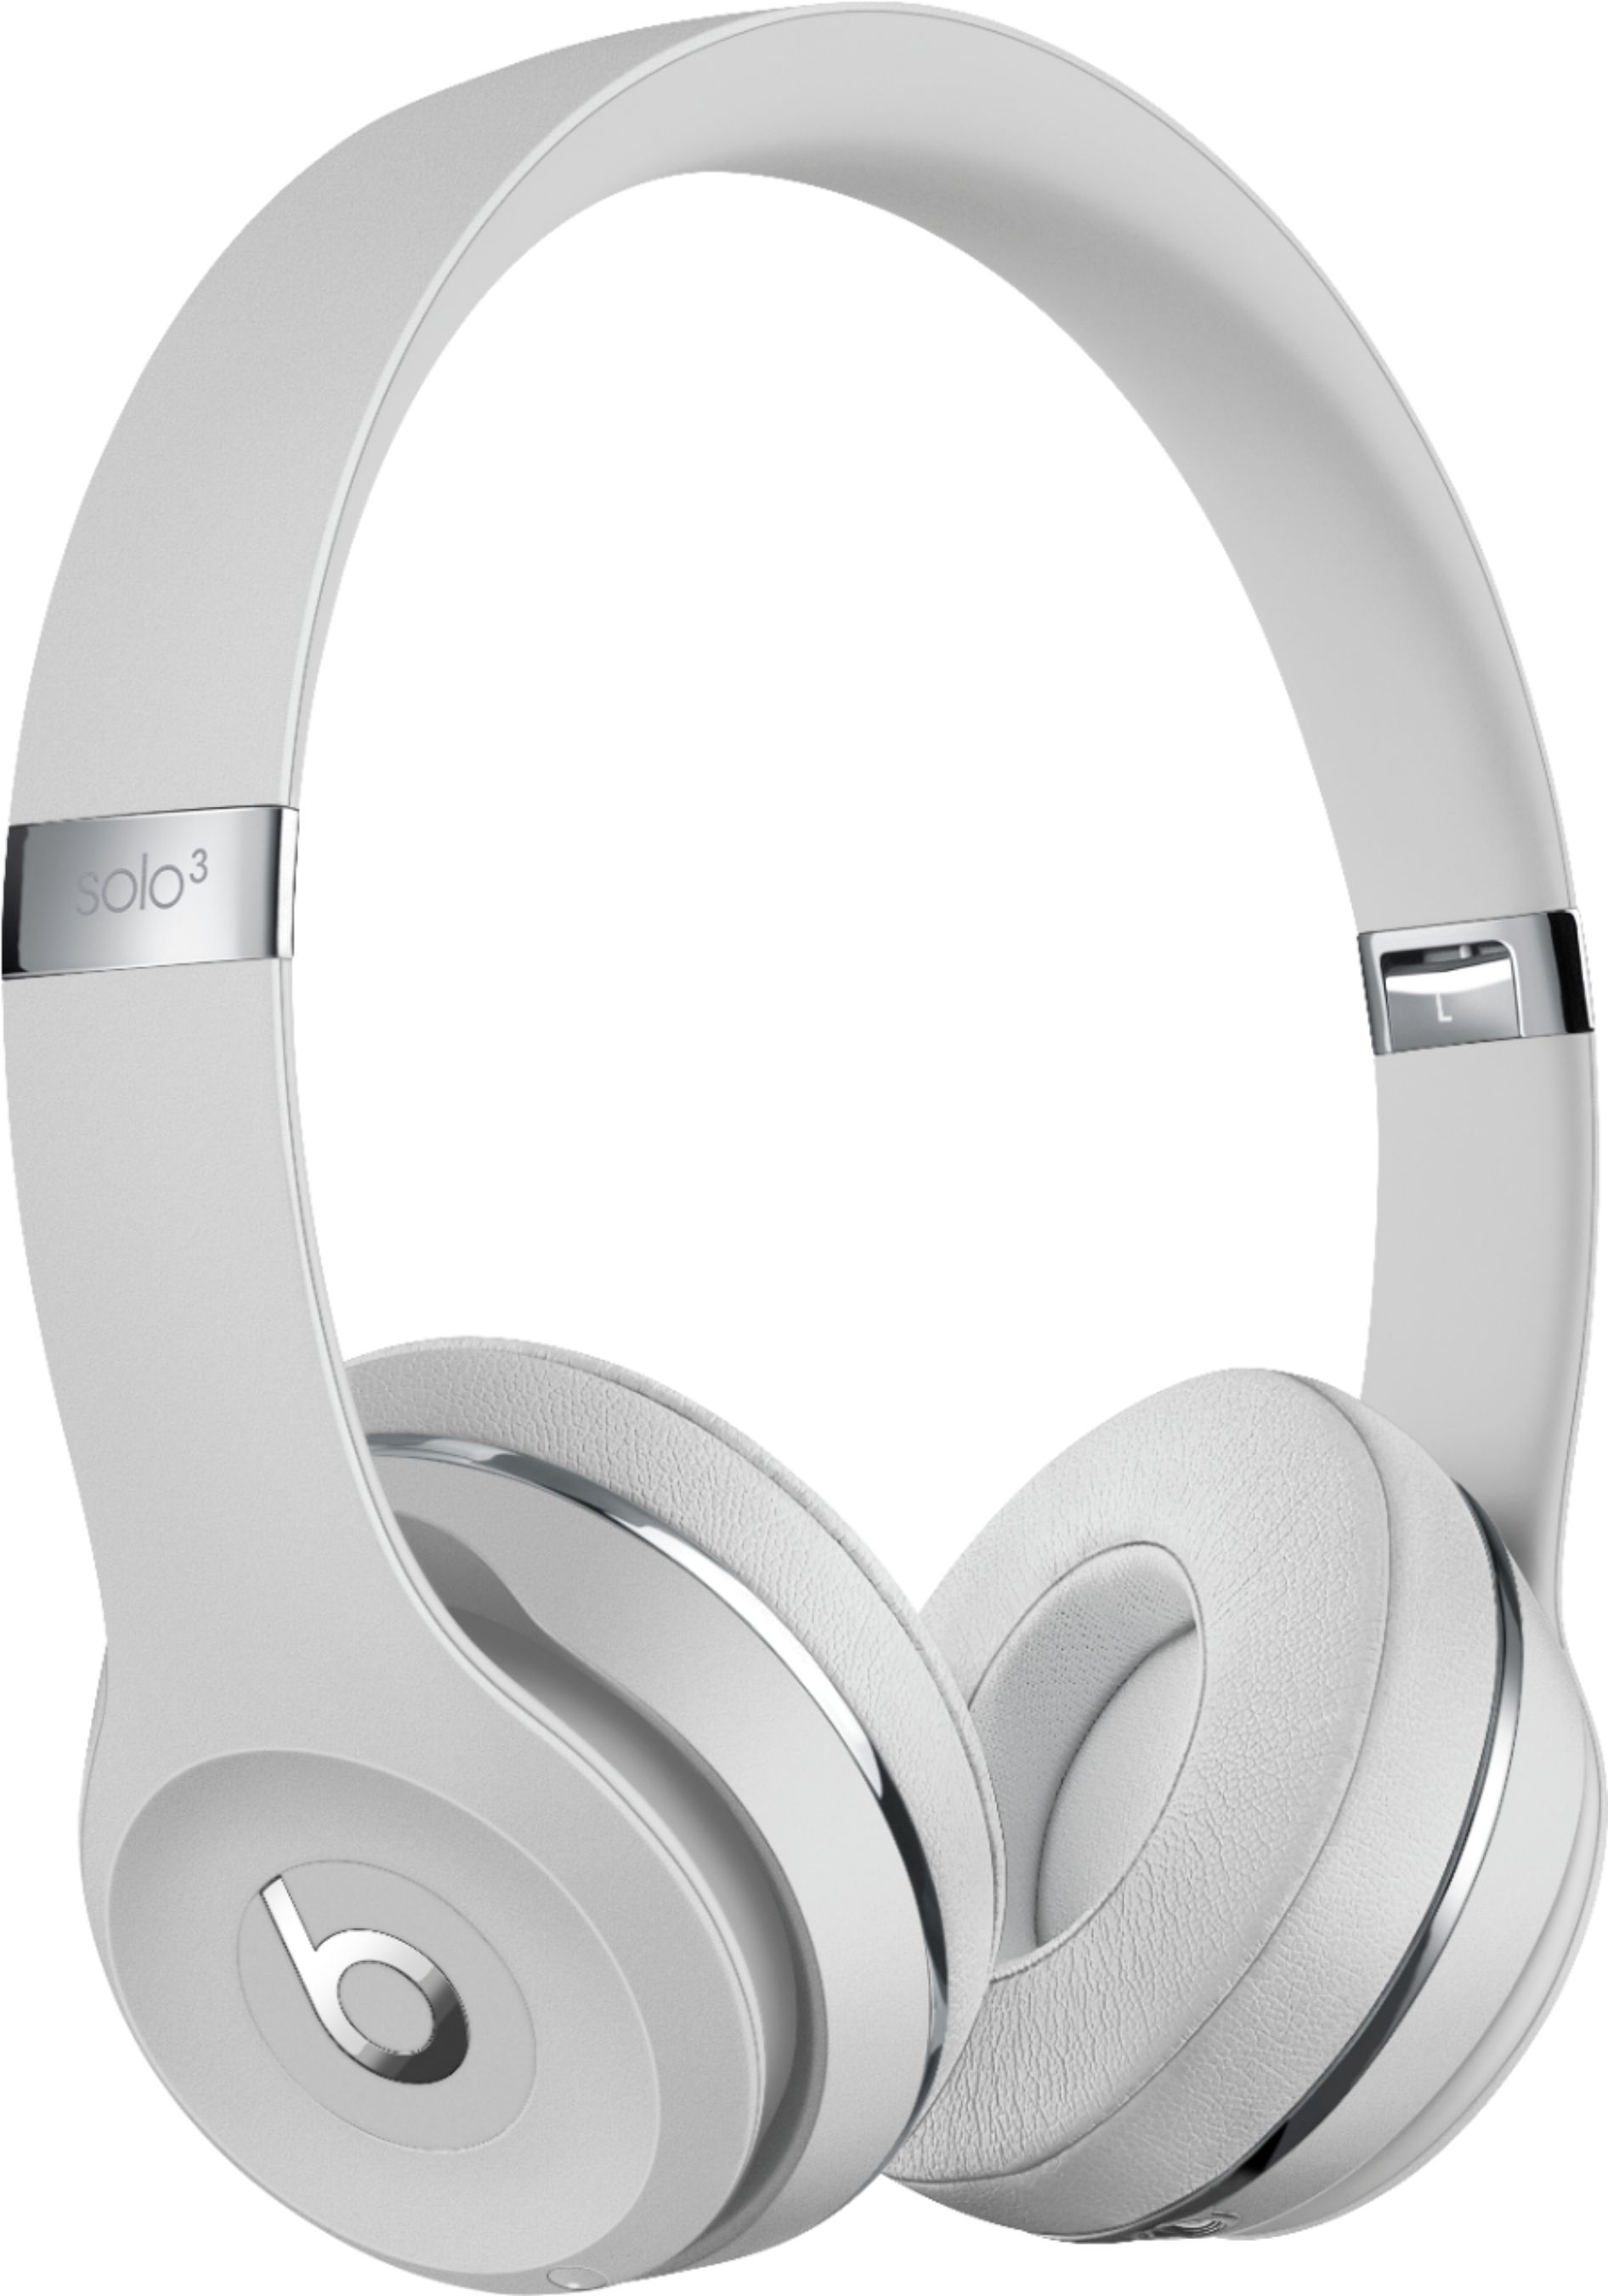 オーディオ機器 ヘッドフォン Beats by Dr. Dre Beats Solo3 Wireless Headphones Satin  - Best Buy